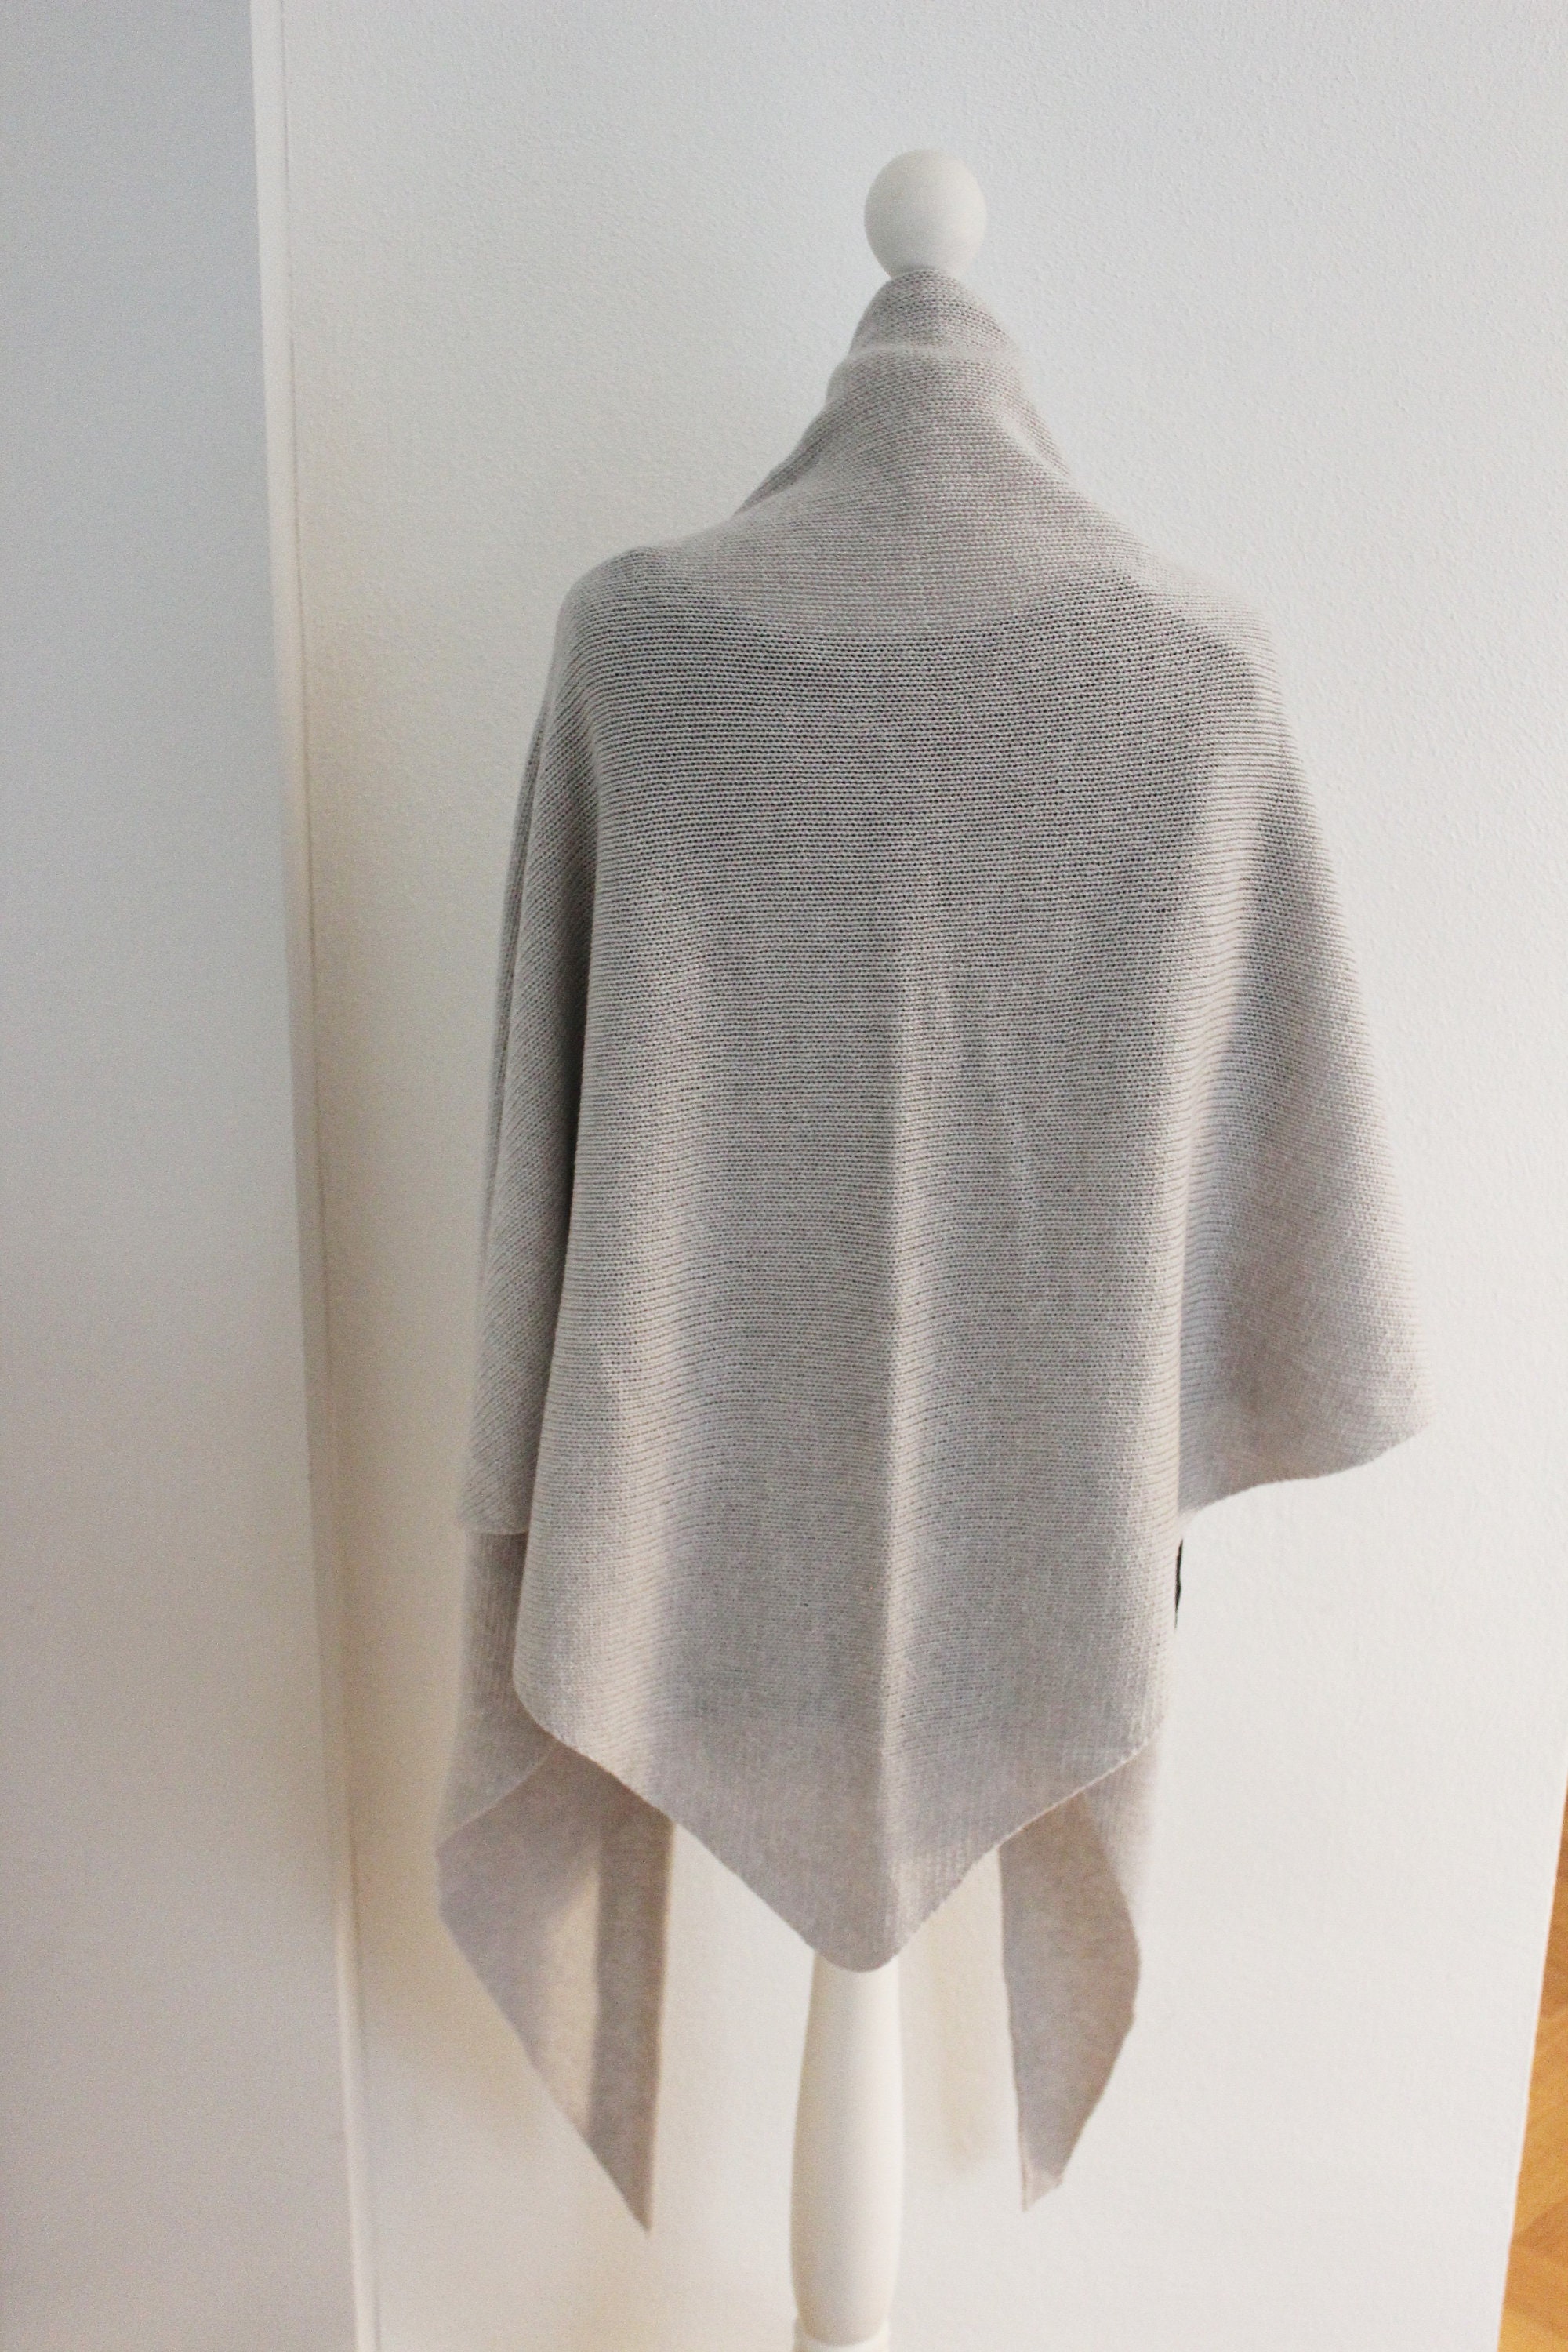 EDEL: Triangular cloth MEDIUM made of 100% cashmere cashmere | Etsy